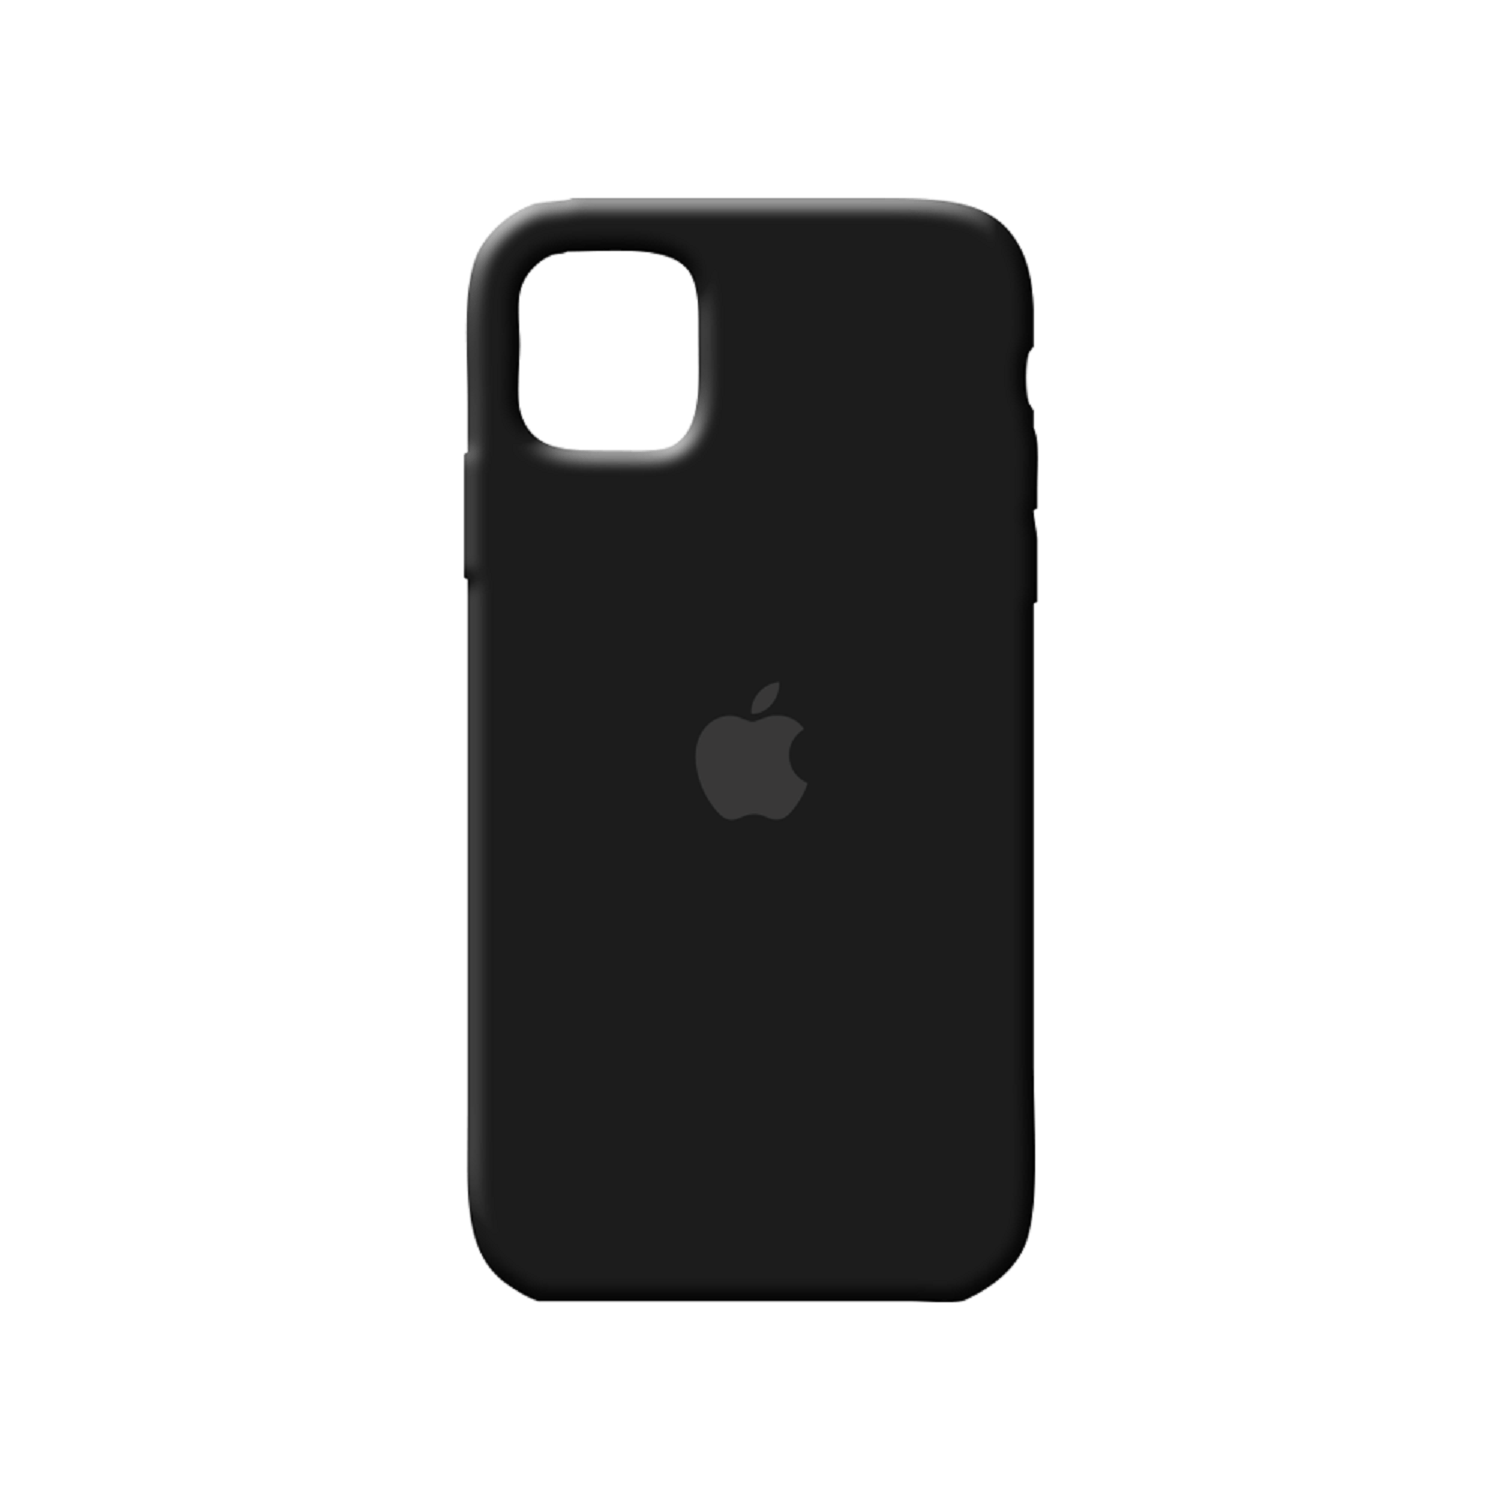 Funda Silicone Case Iphone 11 - Negro